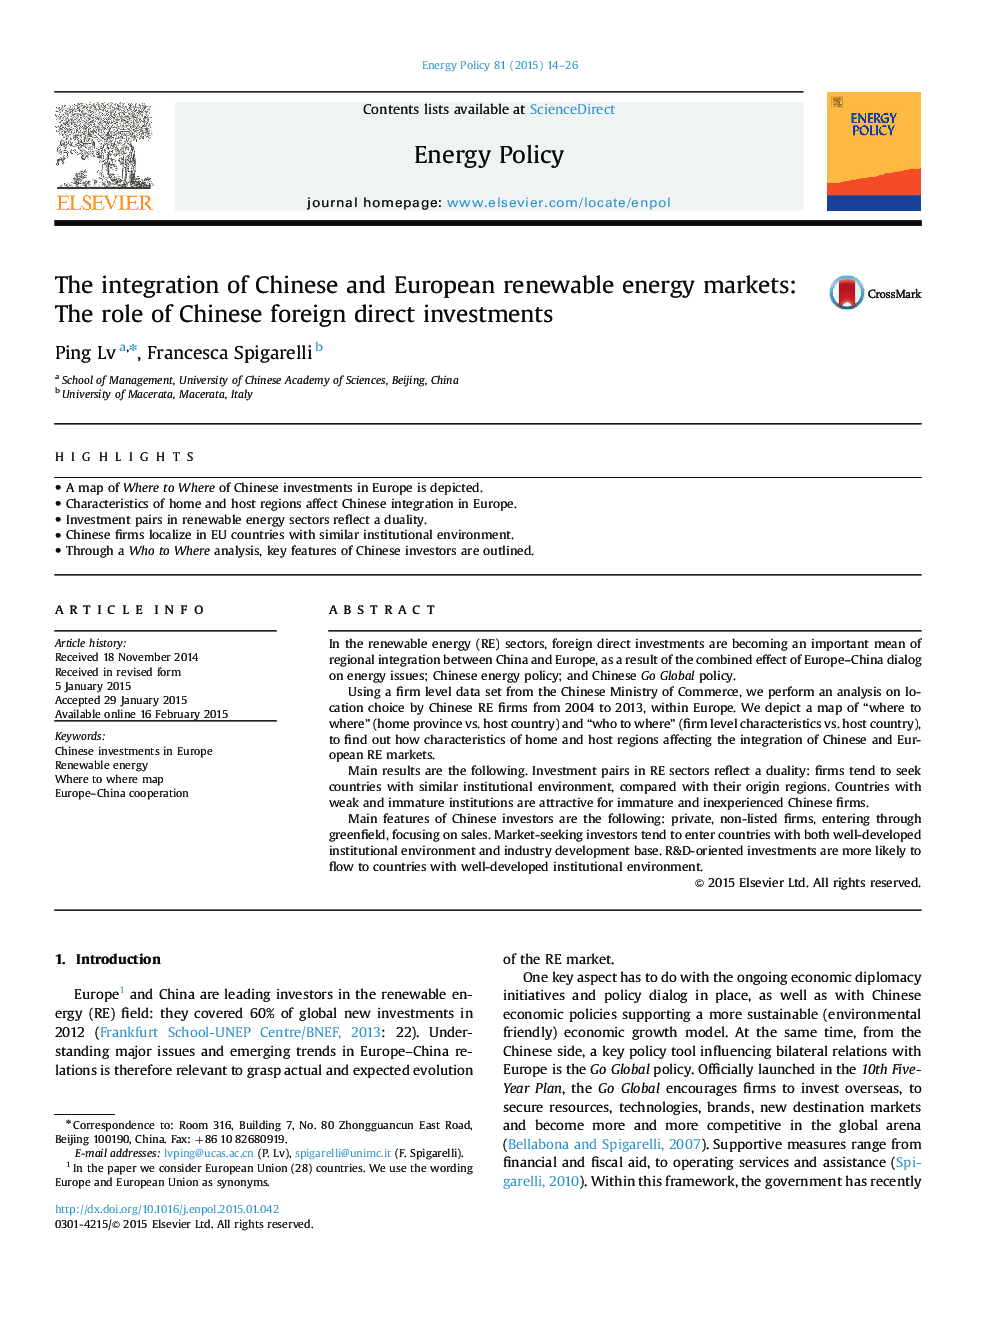 یکپارچگی بازارهای انرژی های تجدید پذیر چینی و اروپایی: نقش سرمایه گذاری مستقیم خارجی چینی